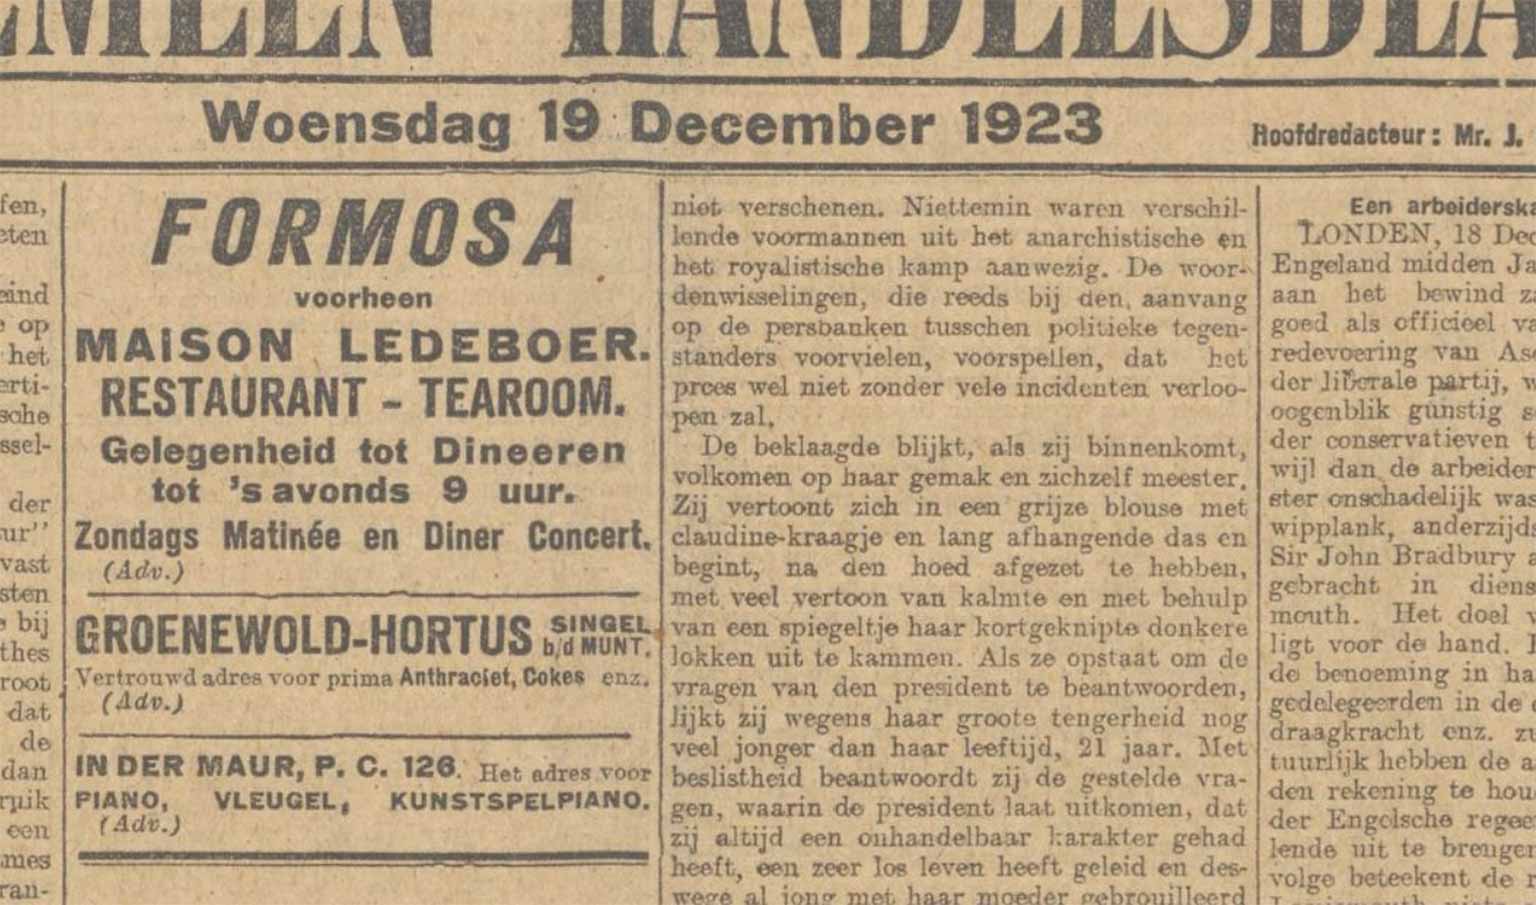 Advertentie voor Formosa, 19 December 1923 in het Algemeen Handelsblad